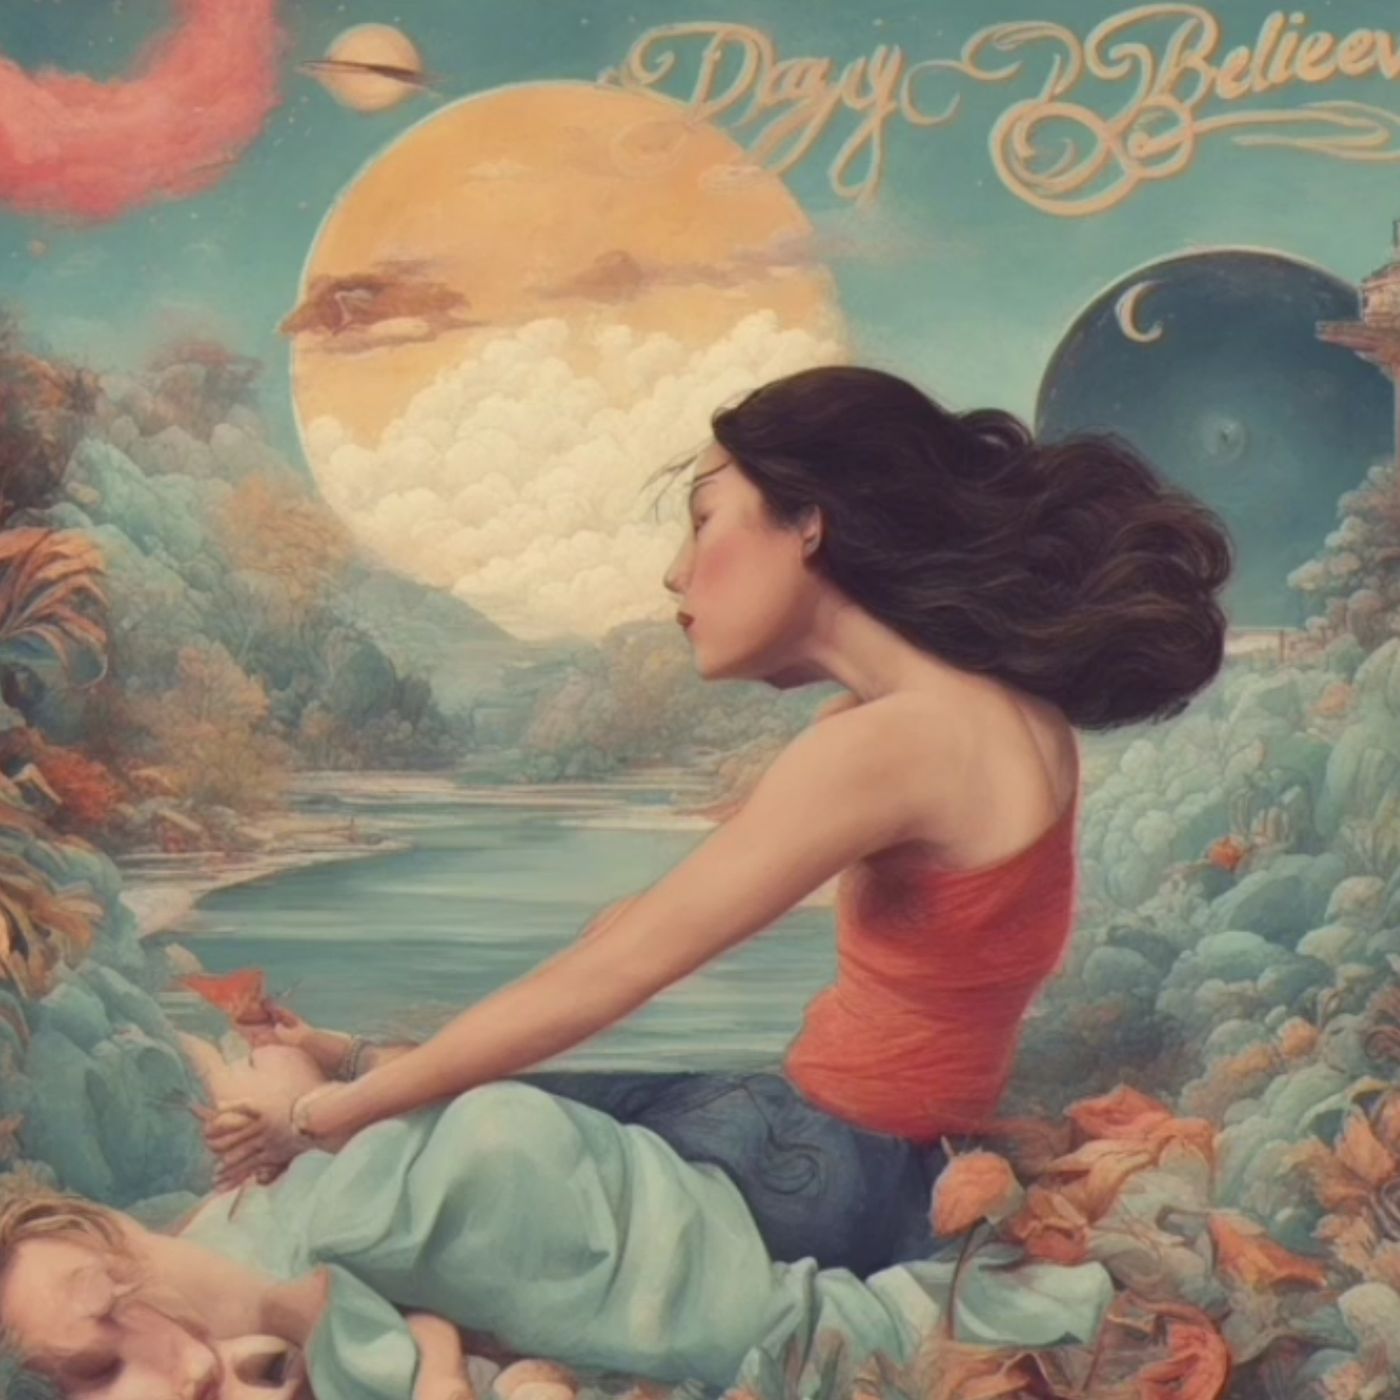 Daydream Believer Cover by Peter Boykin Sings #PeterBoykinSings